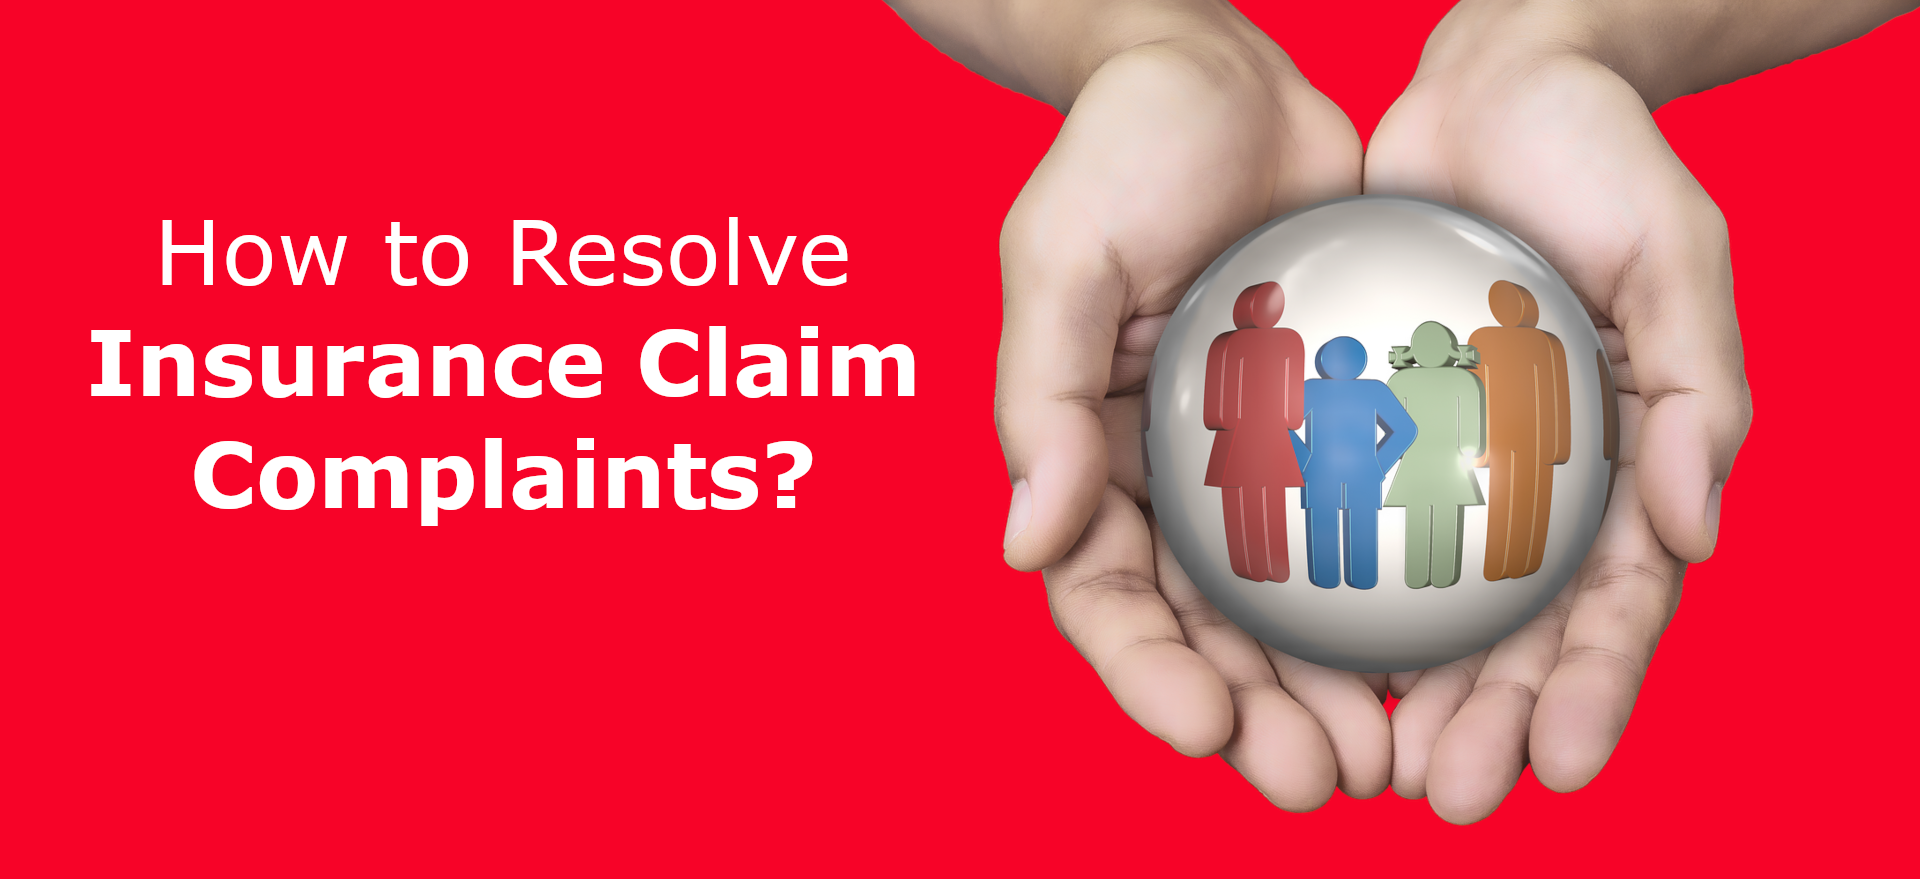 Insurance Claim Complaints?